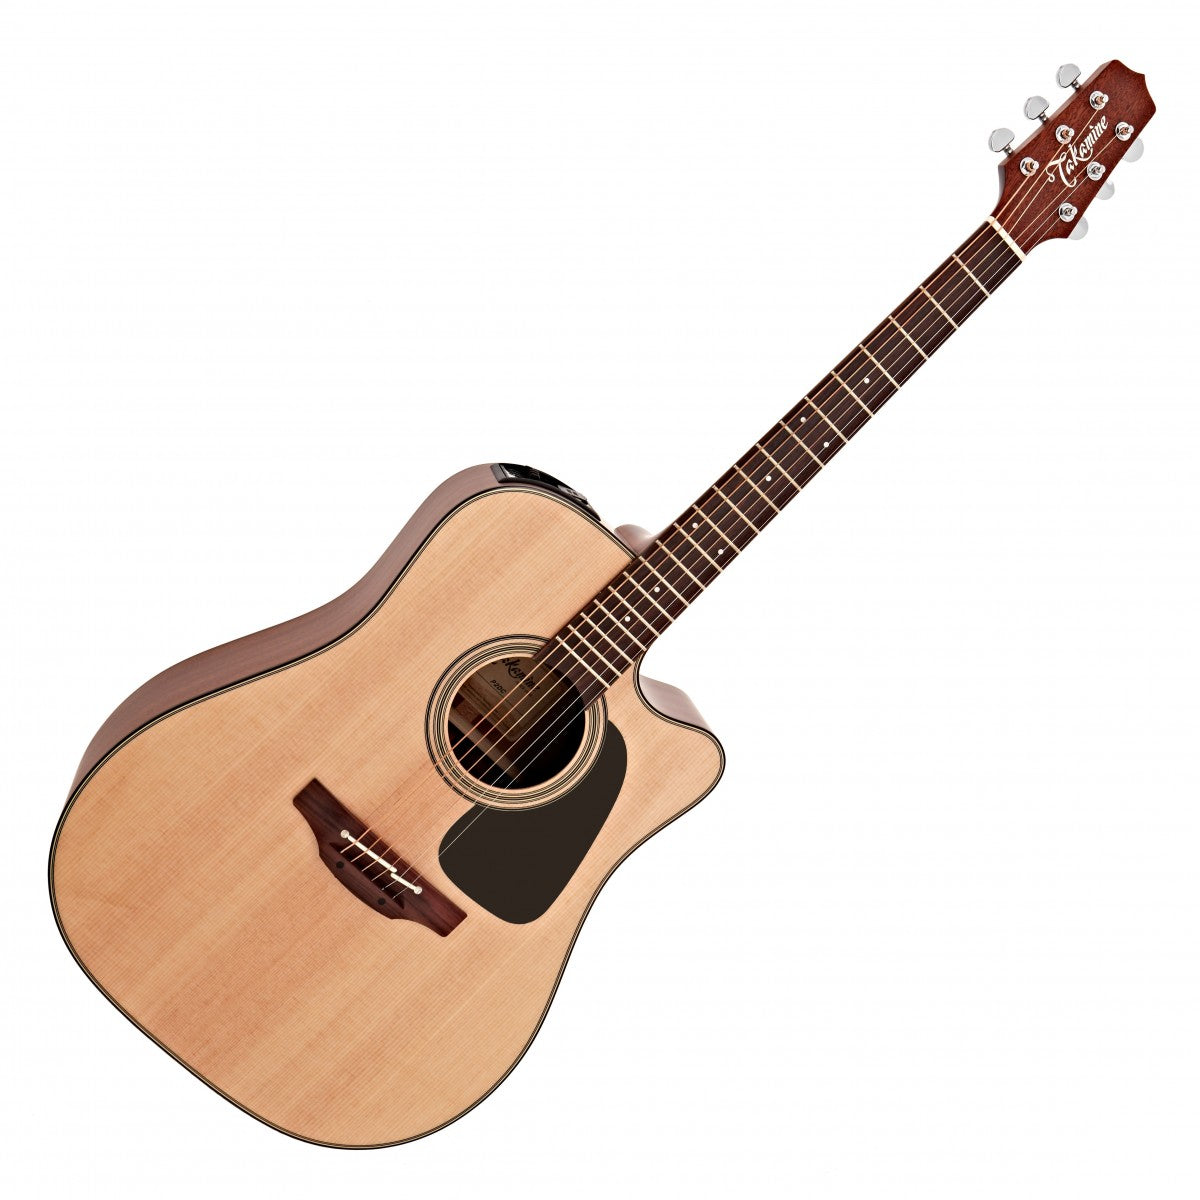 Đàn Guitar Takamine P2DC, Acoustic